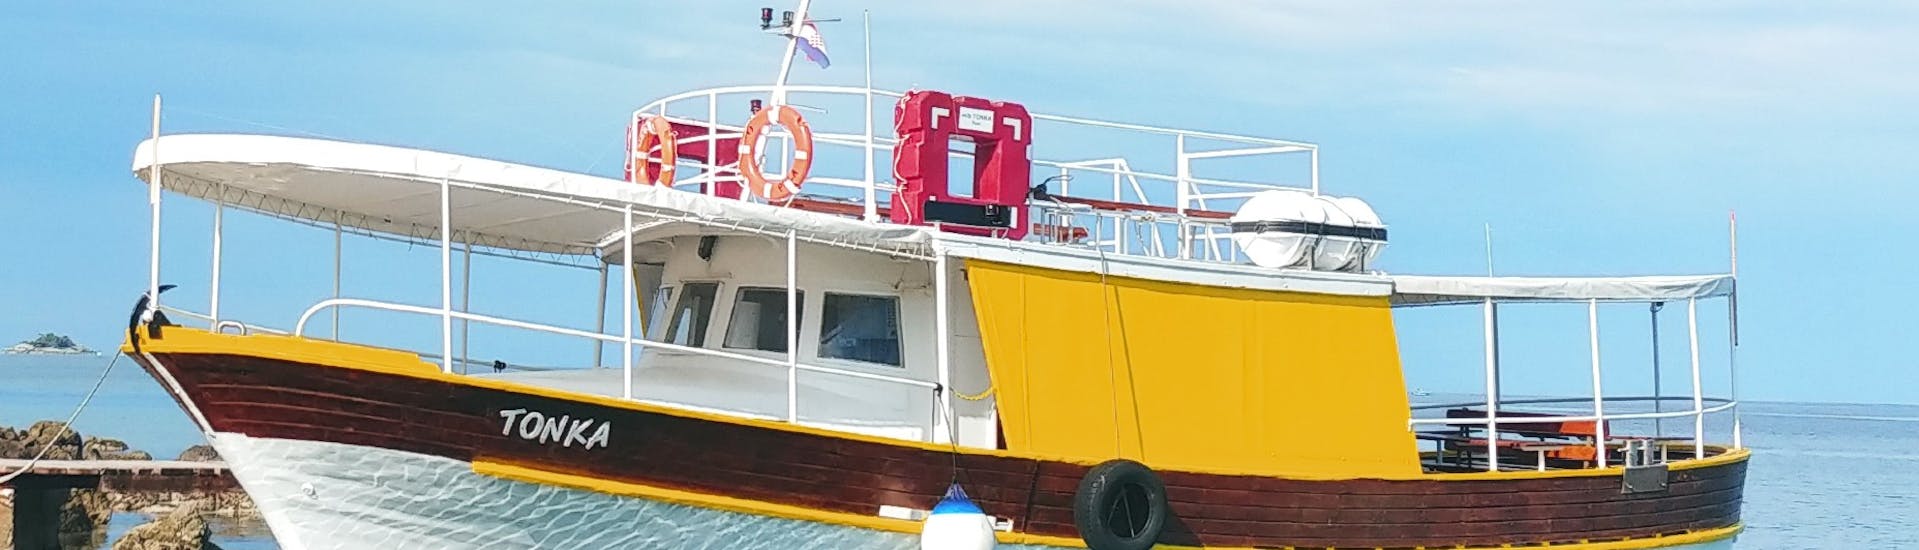 Foto van de boot genaamd Tonka tijdens de boottocht rond Rovinj met zwemmen georganiseerd door Boot Excursies Tonka Rovinj.